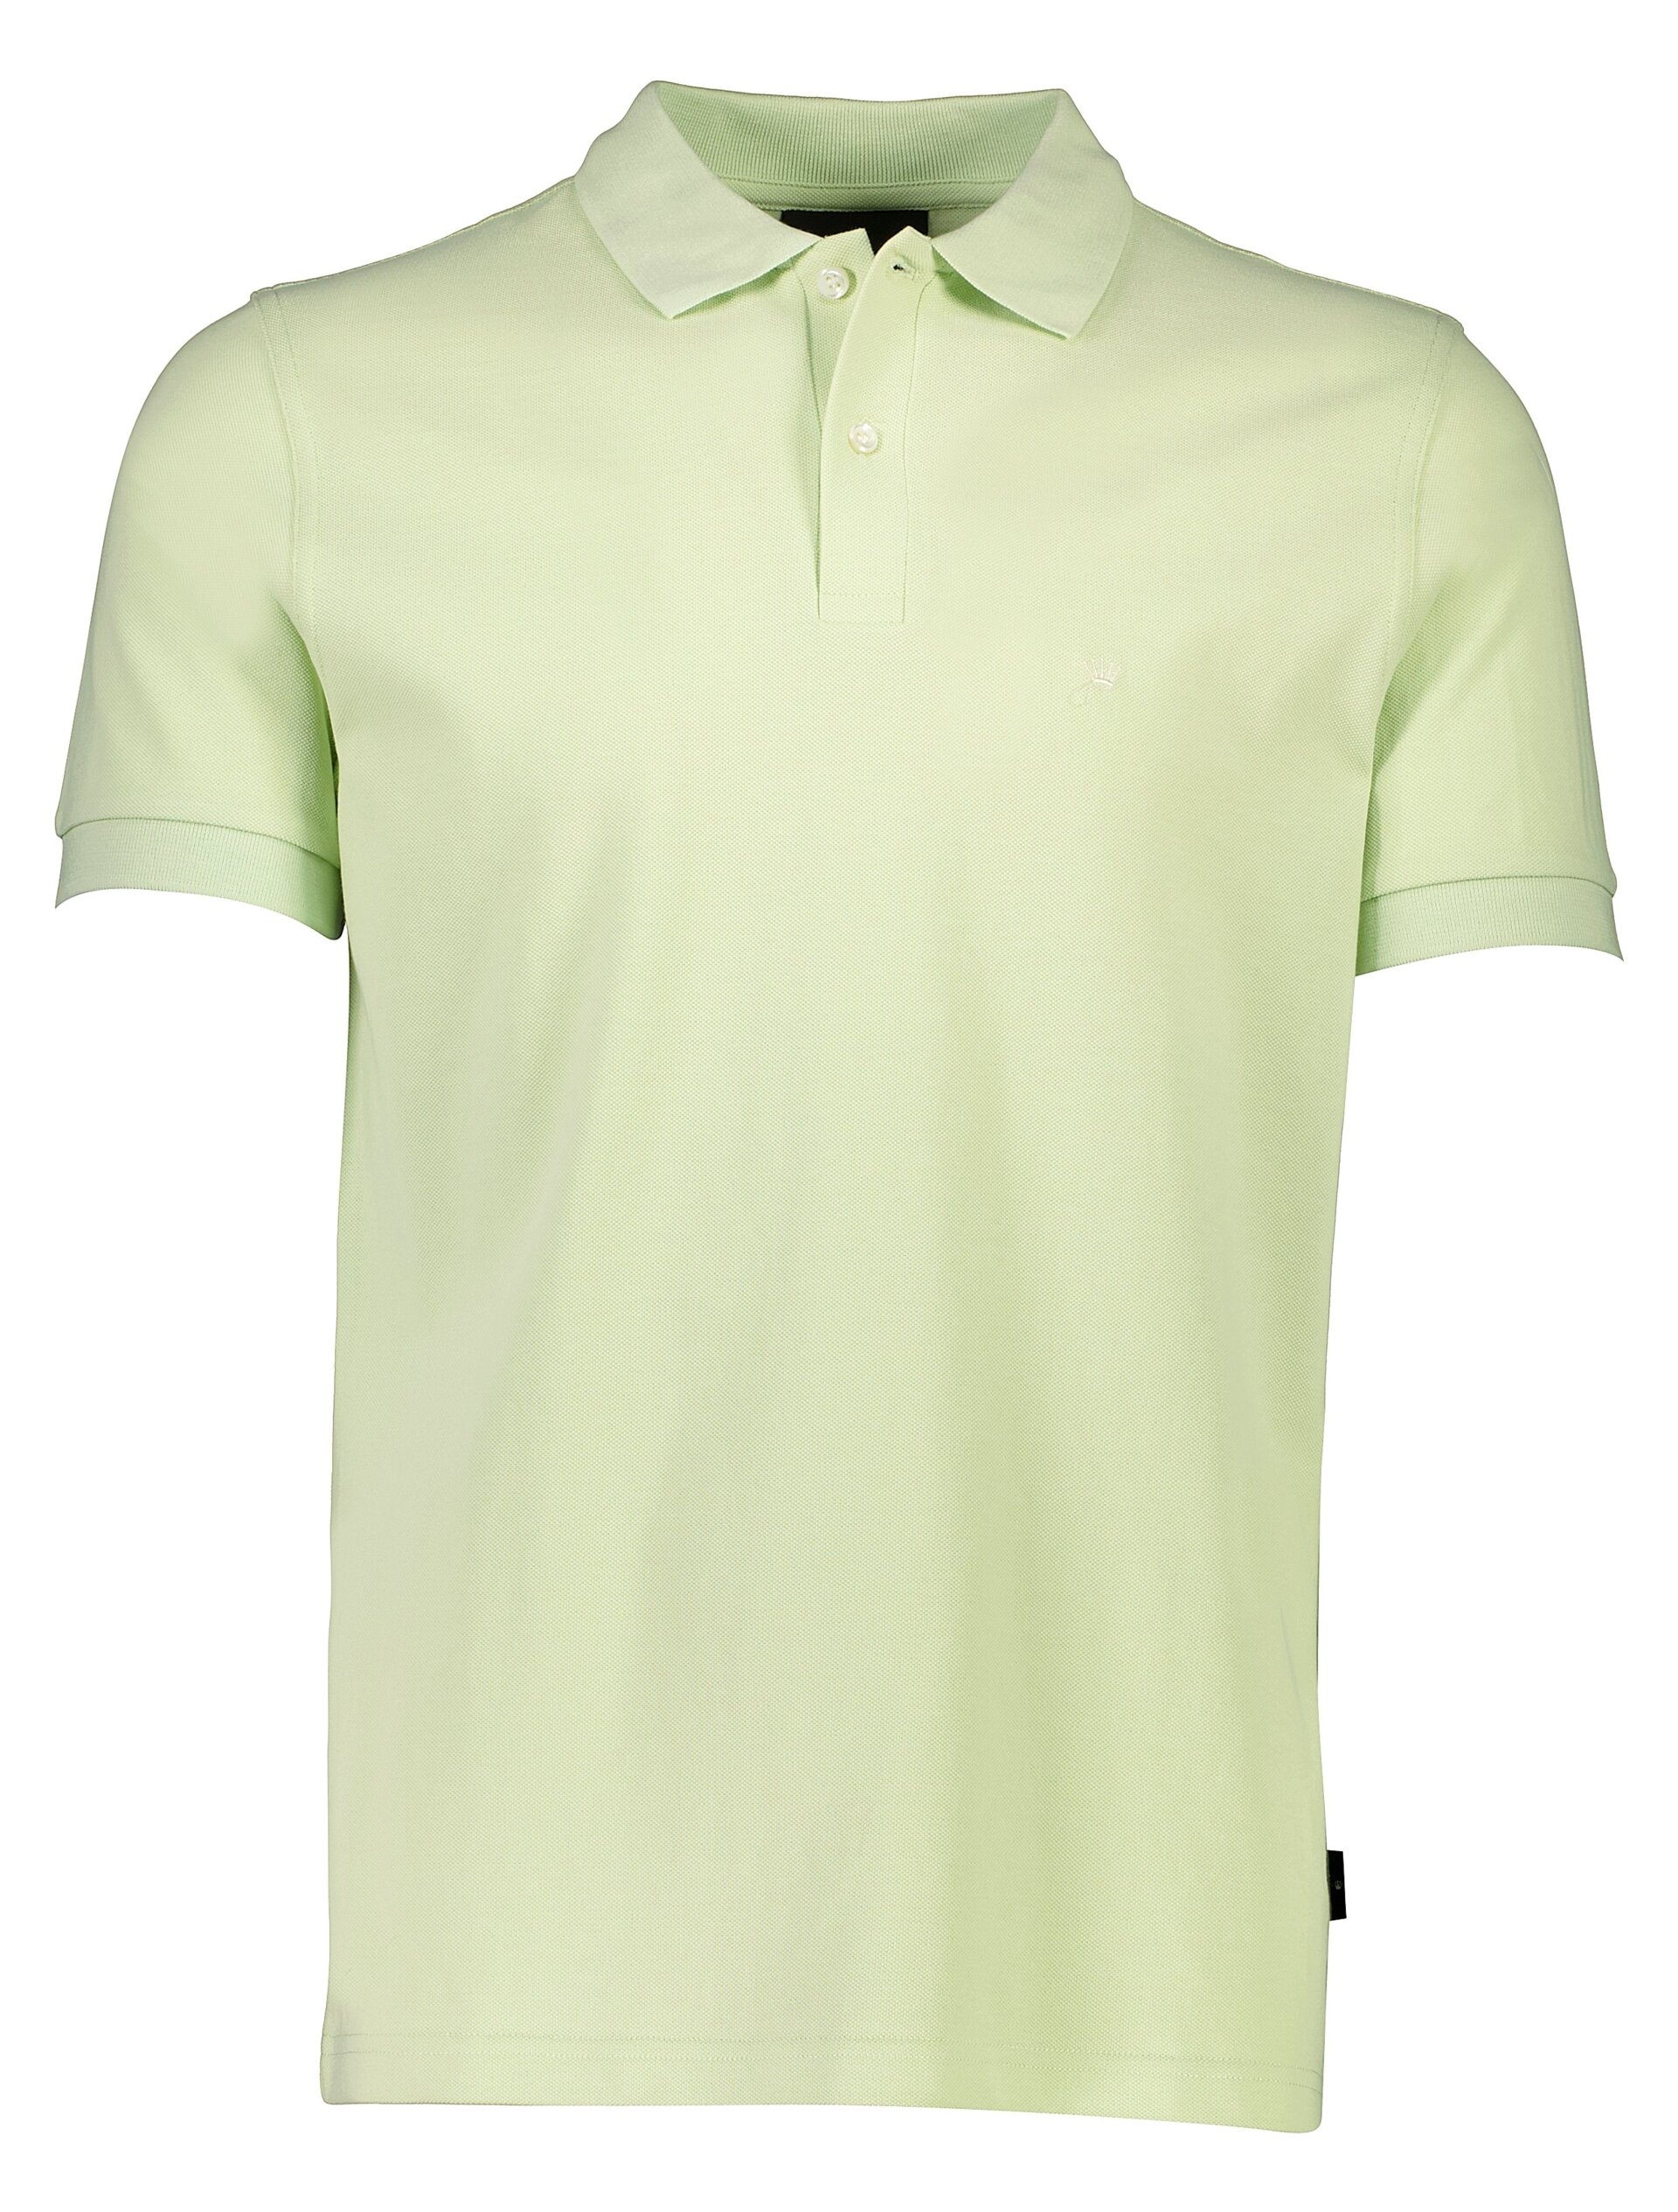 Junk de Luxe Poloshirt grøn / mint green